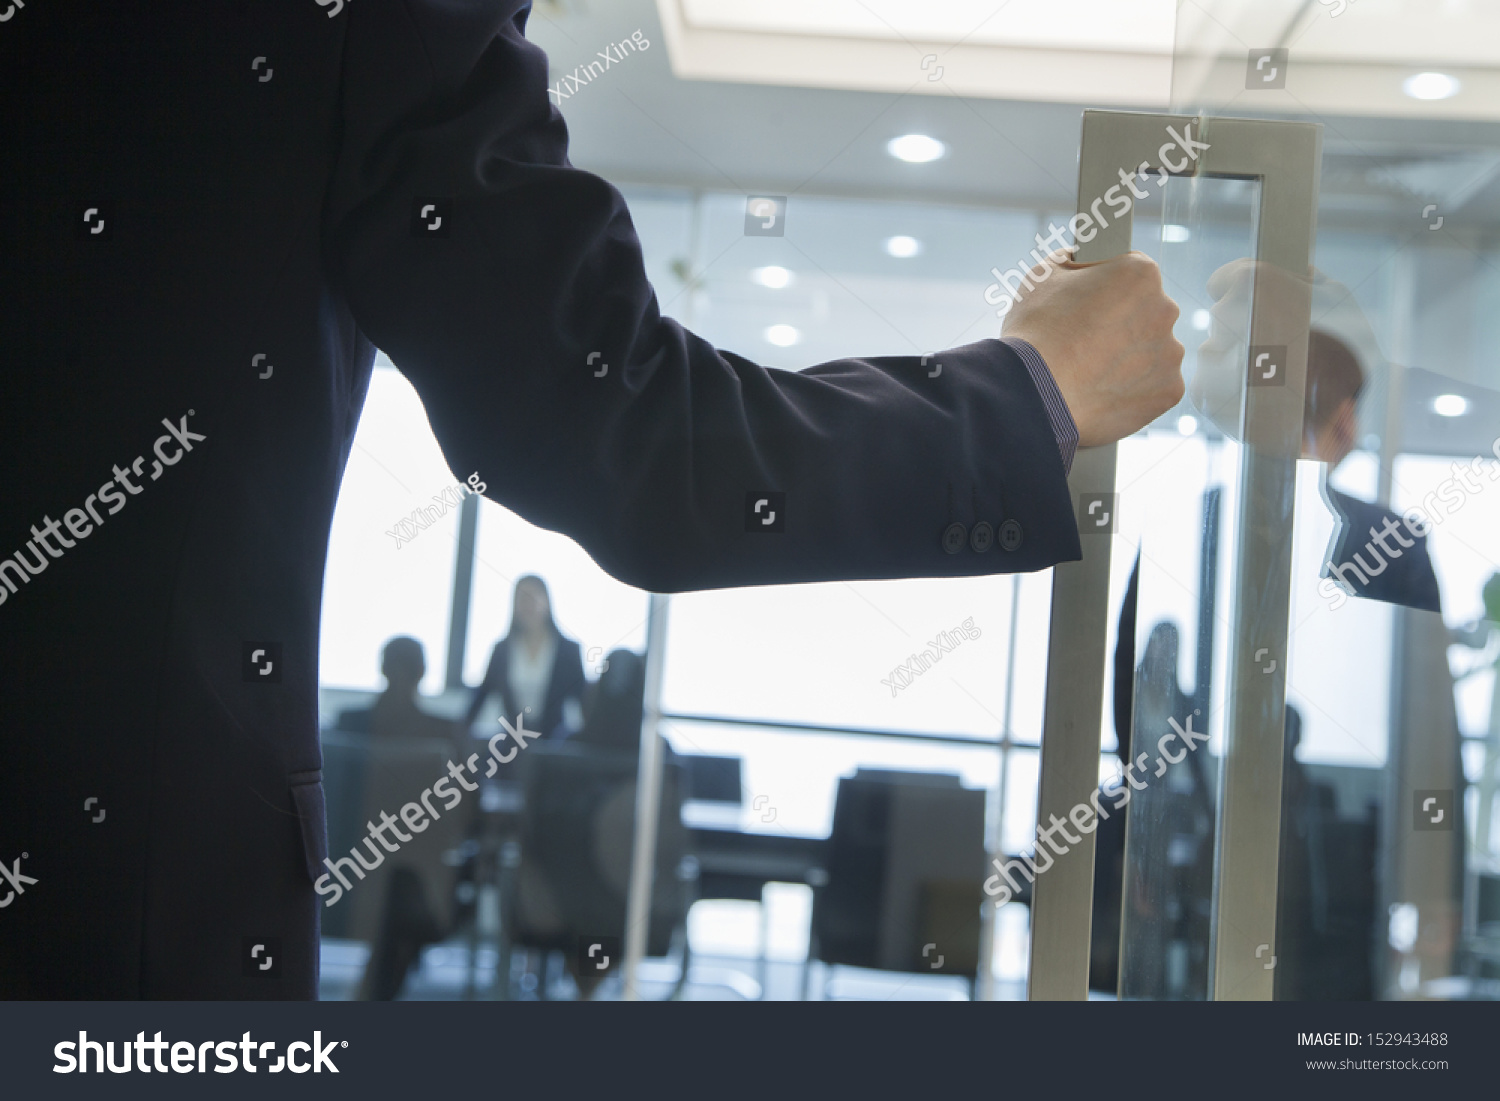 Businessman Entering an Office #152943488